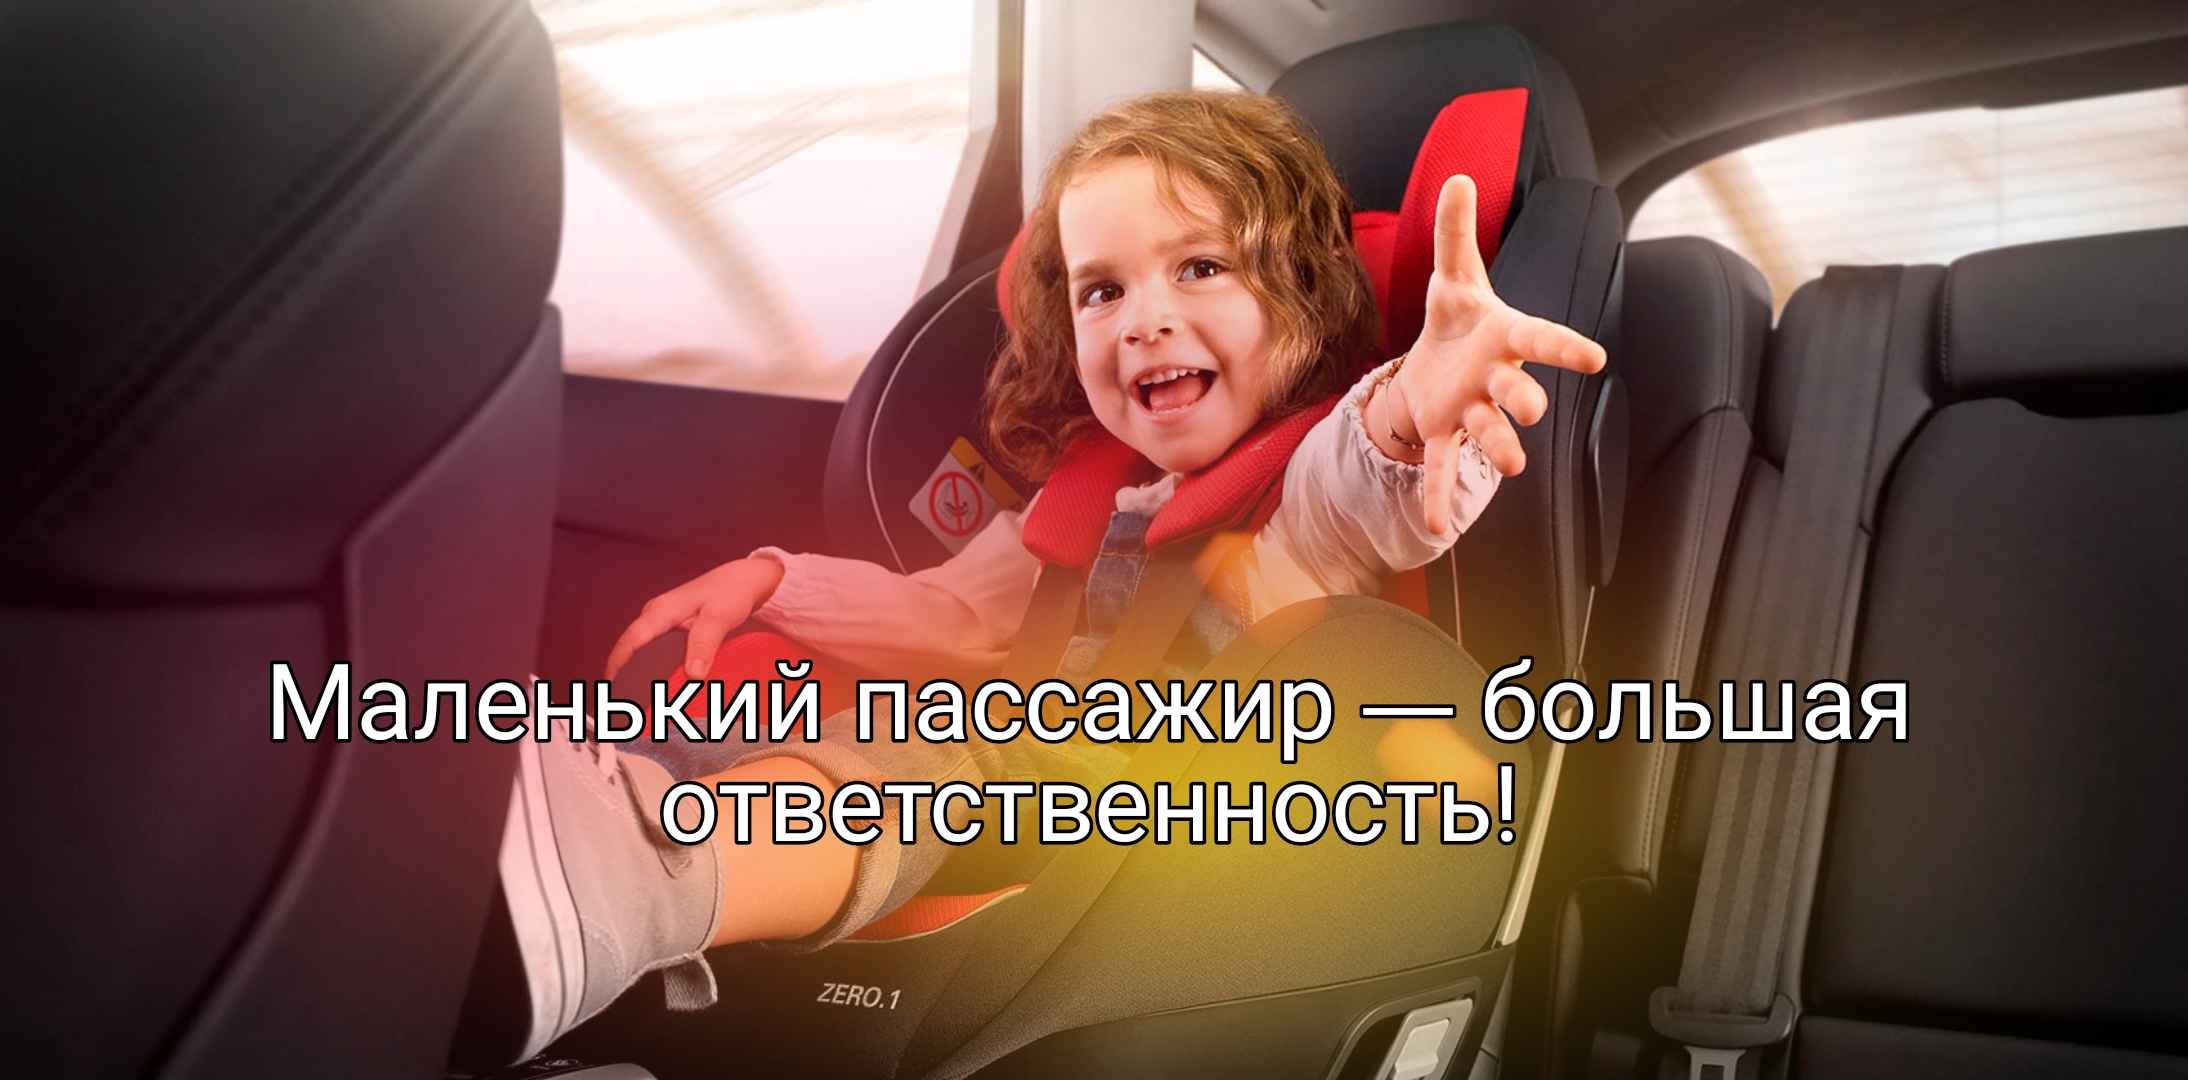 Белокурихинская Госавтоинспекция напоминает о соблюдении правил перевозки детей-пассажиров.